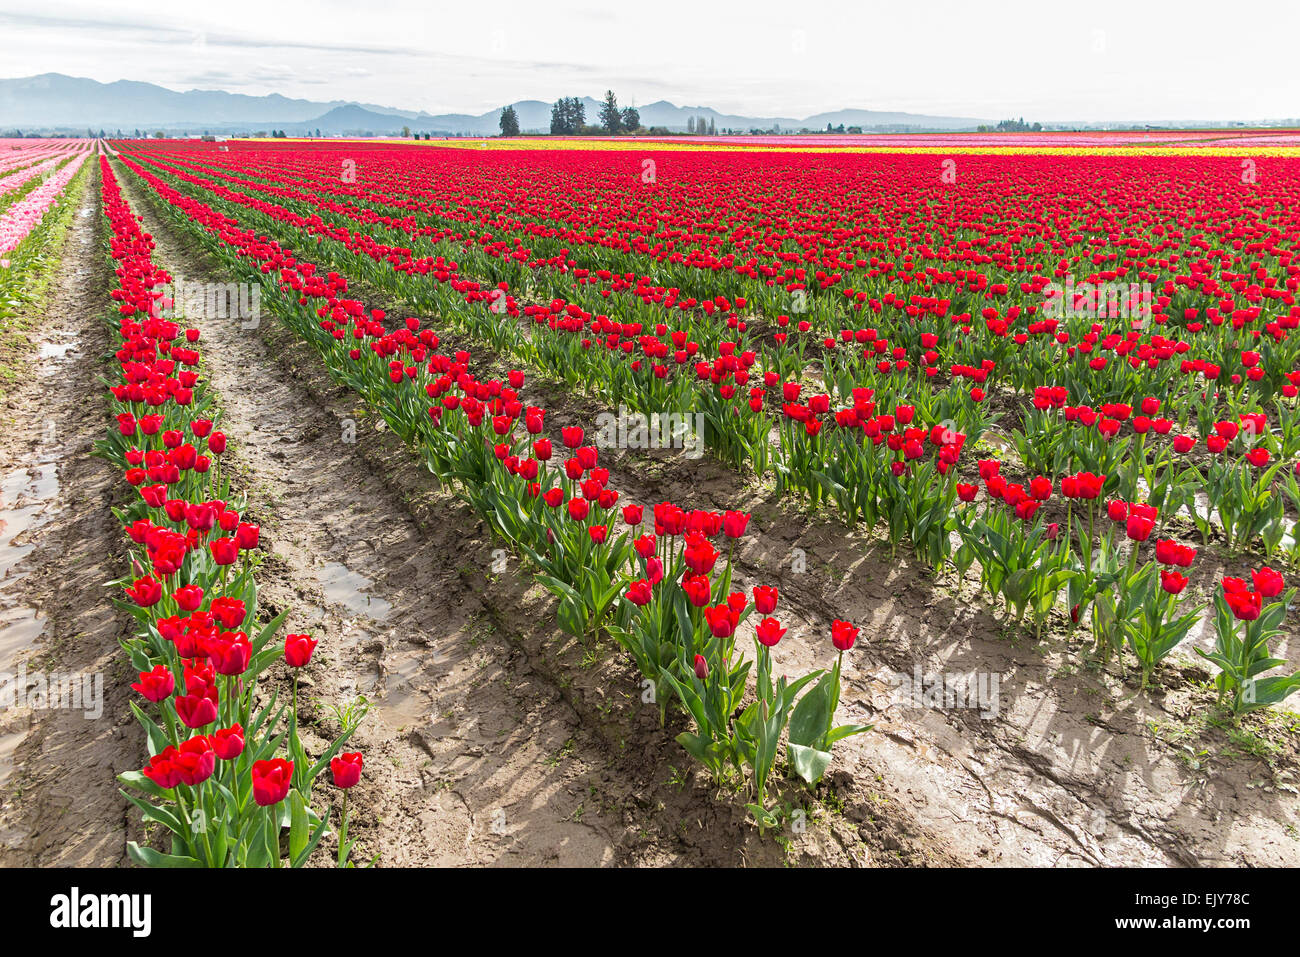 Bereich der roten Tulpen im Skagit Valley Tulip Festival. Stockfoto